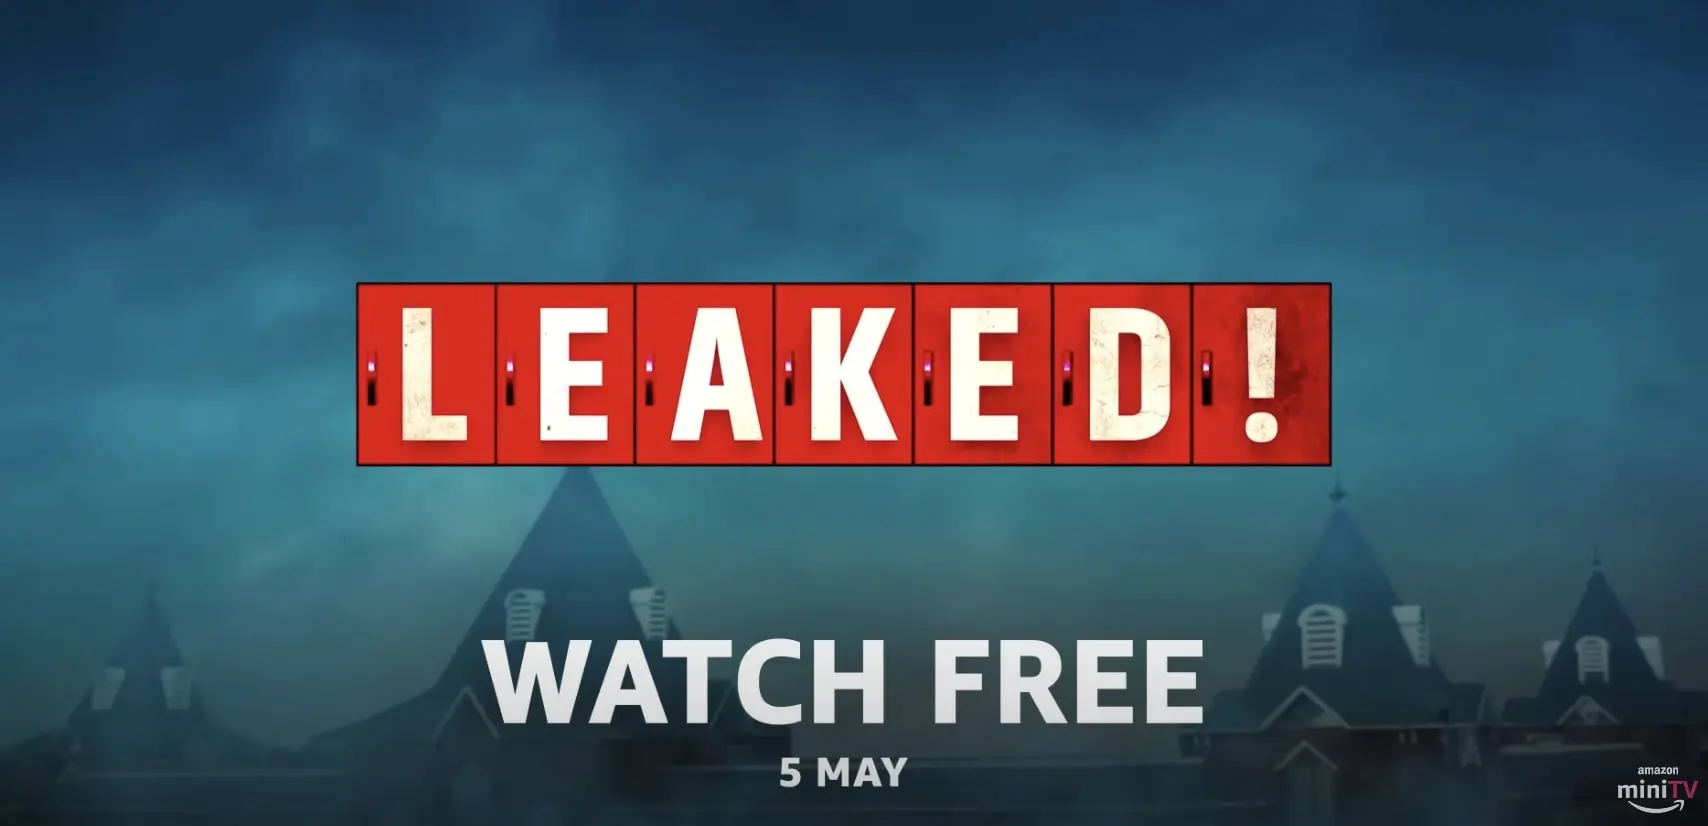 Leaked! web series